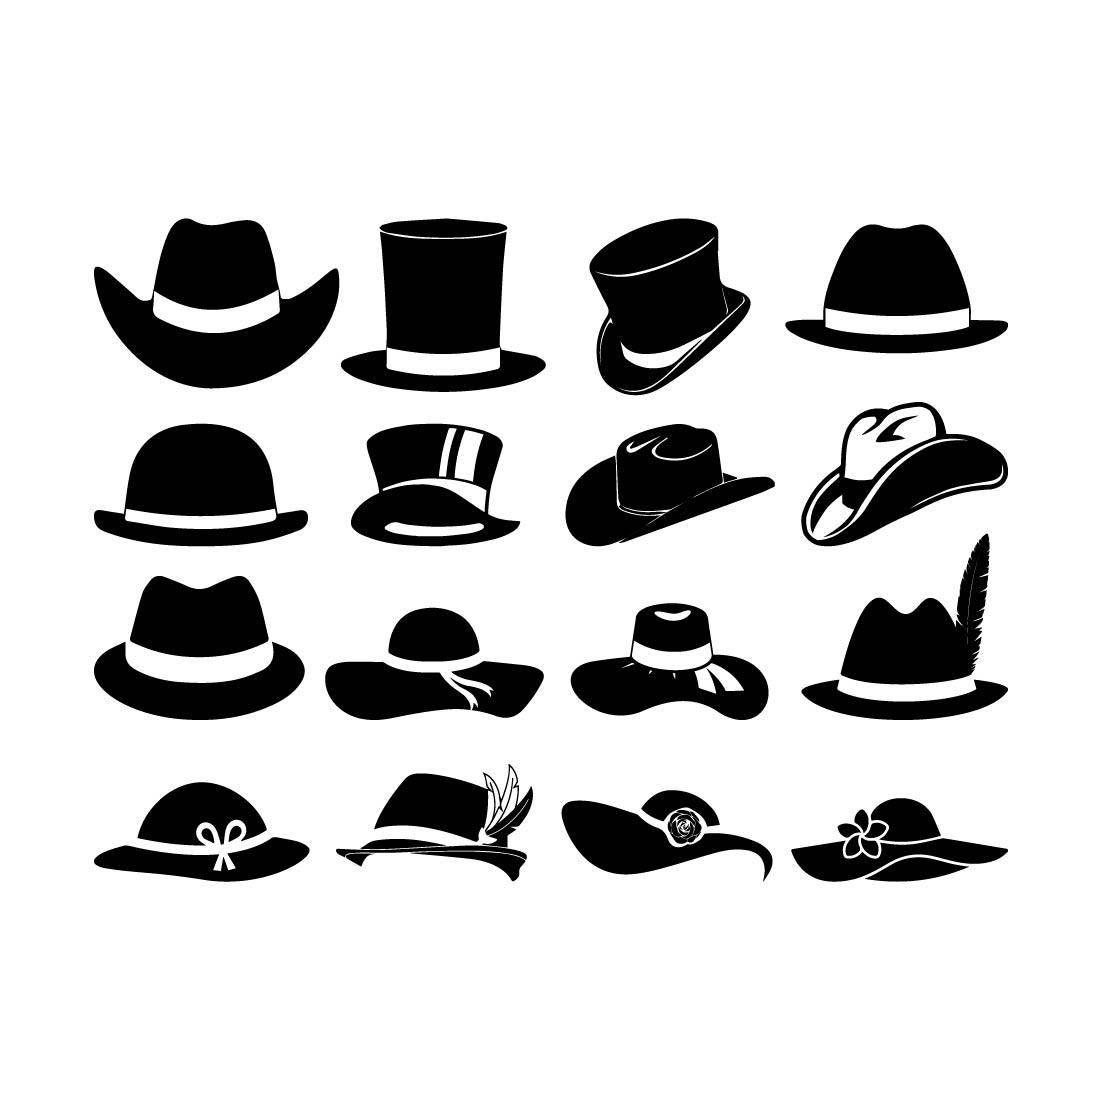 Cowboy Hat SVG, Cowboy Hat Vector, Cricut file, Clipart, Silhouette, Cuttable Design, Dxf, Png & Eps Designs cover image.